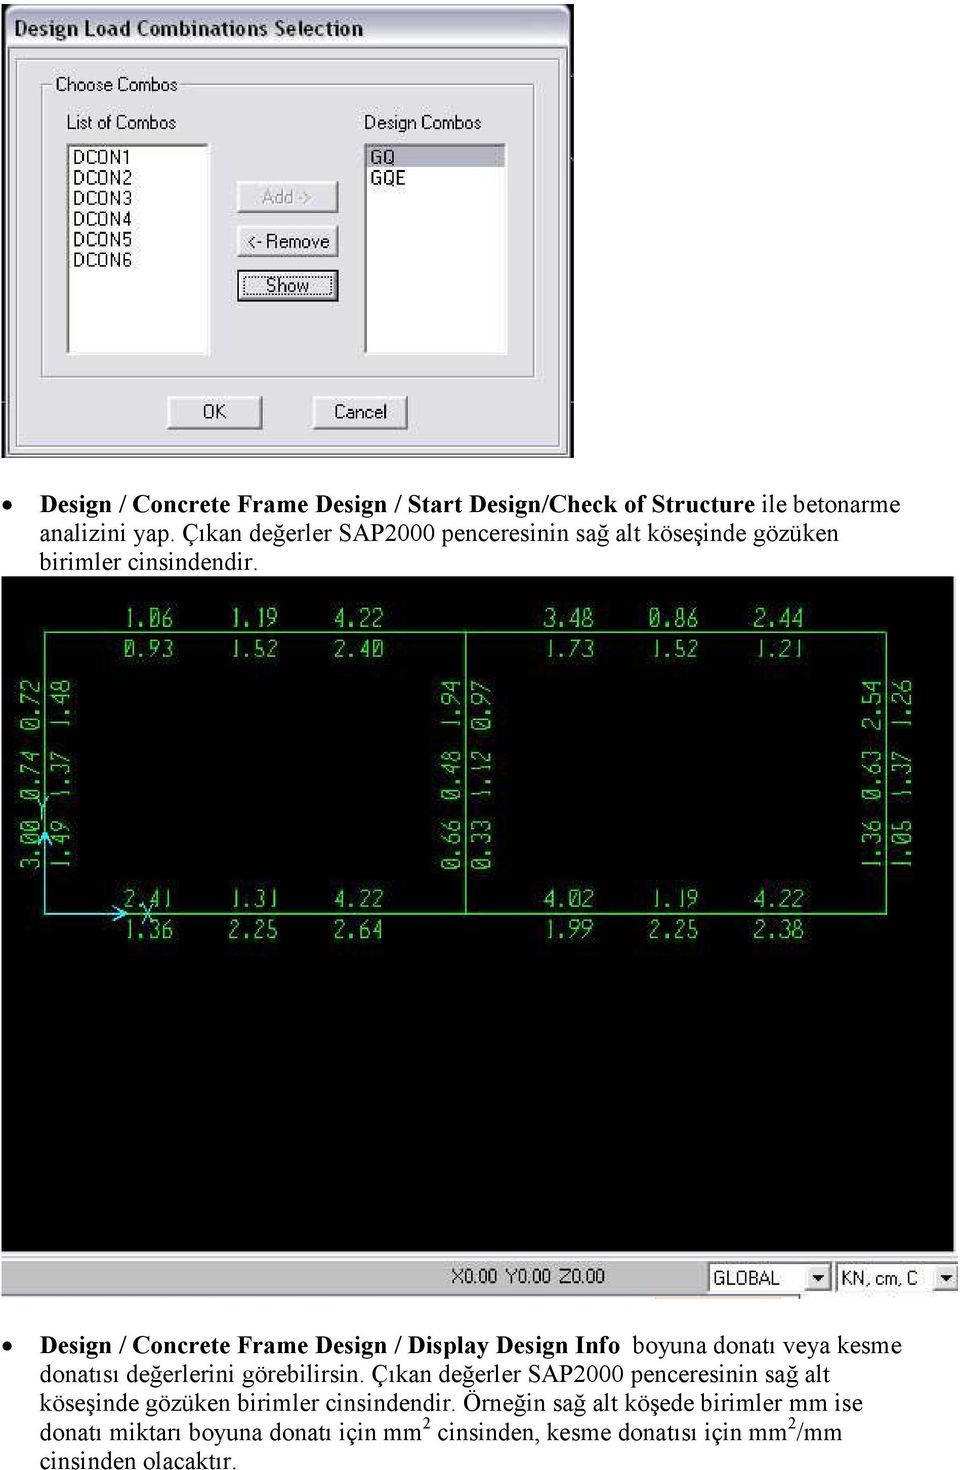 Design / Concrete Frame Design / Display Design Info boyuna donatı veya kesme donatısı değerlerini görebilirsin.